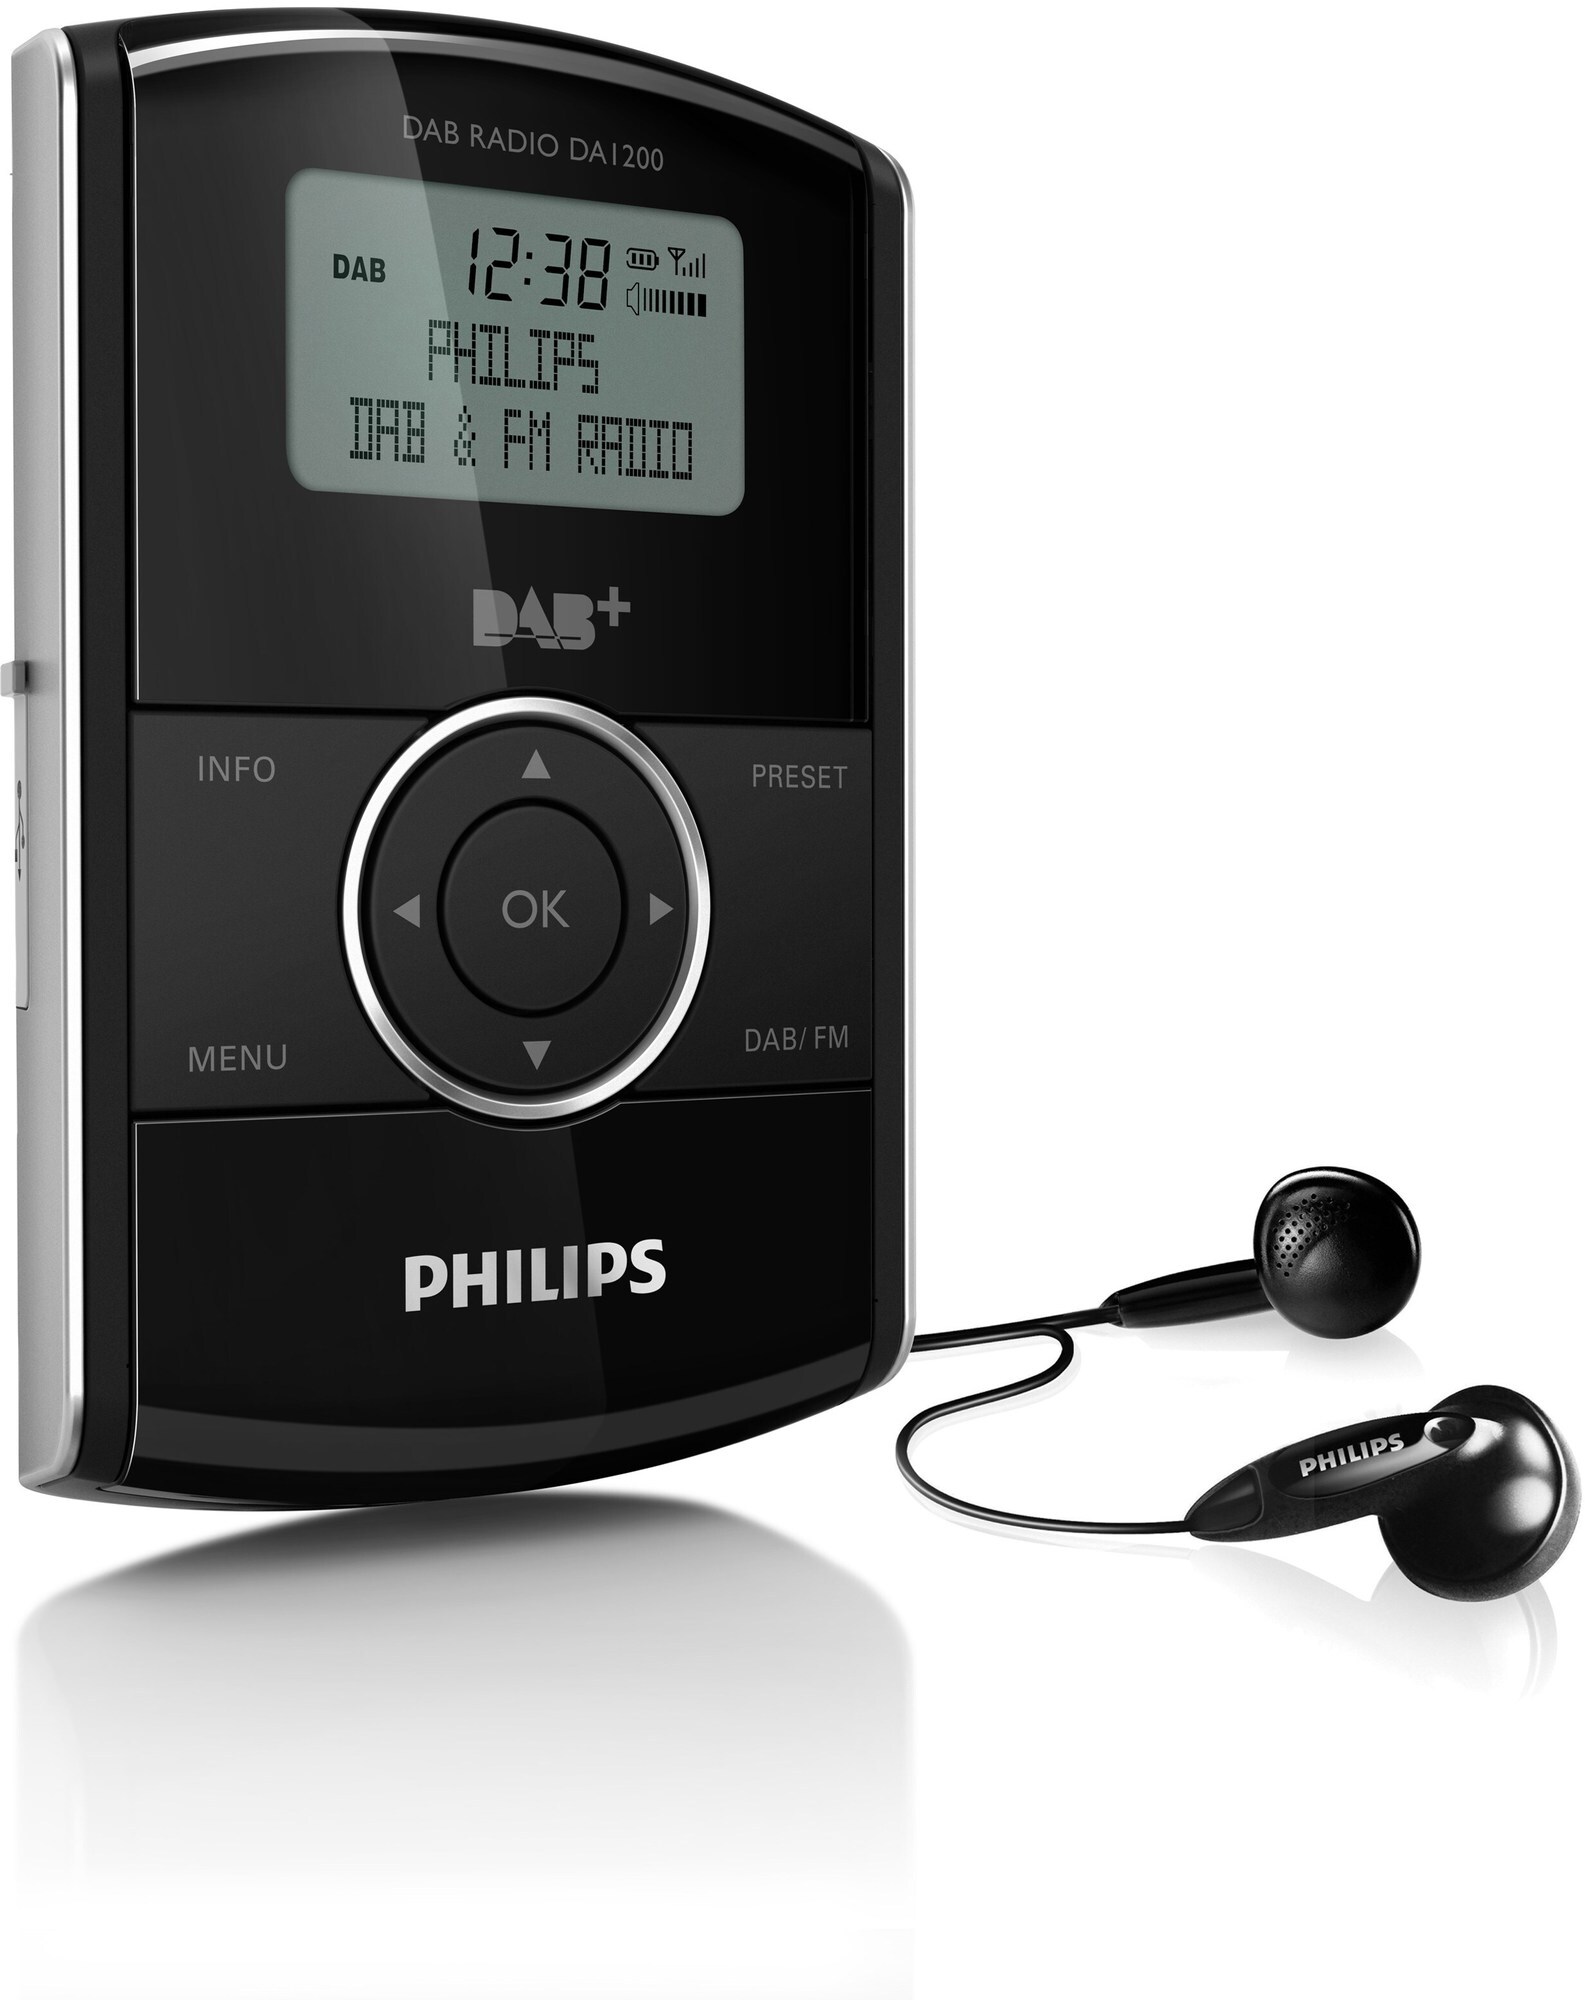 Philips digital lommeradio DAB+ DA1200 | Elgiganten